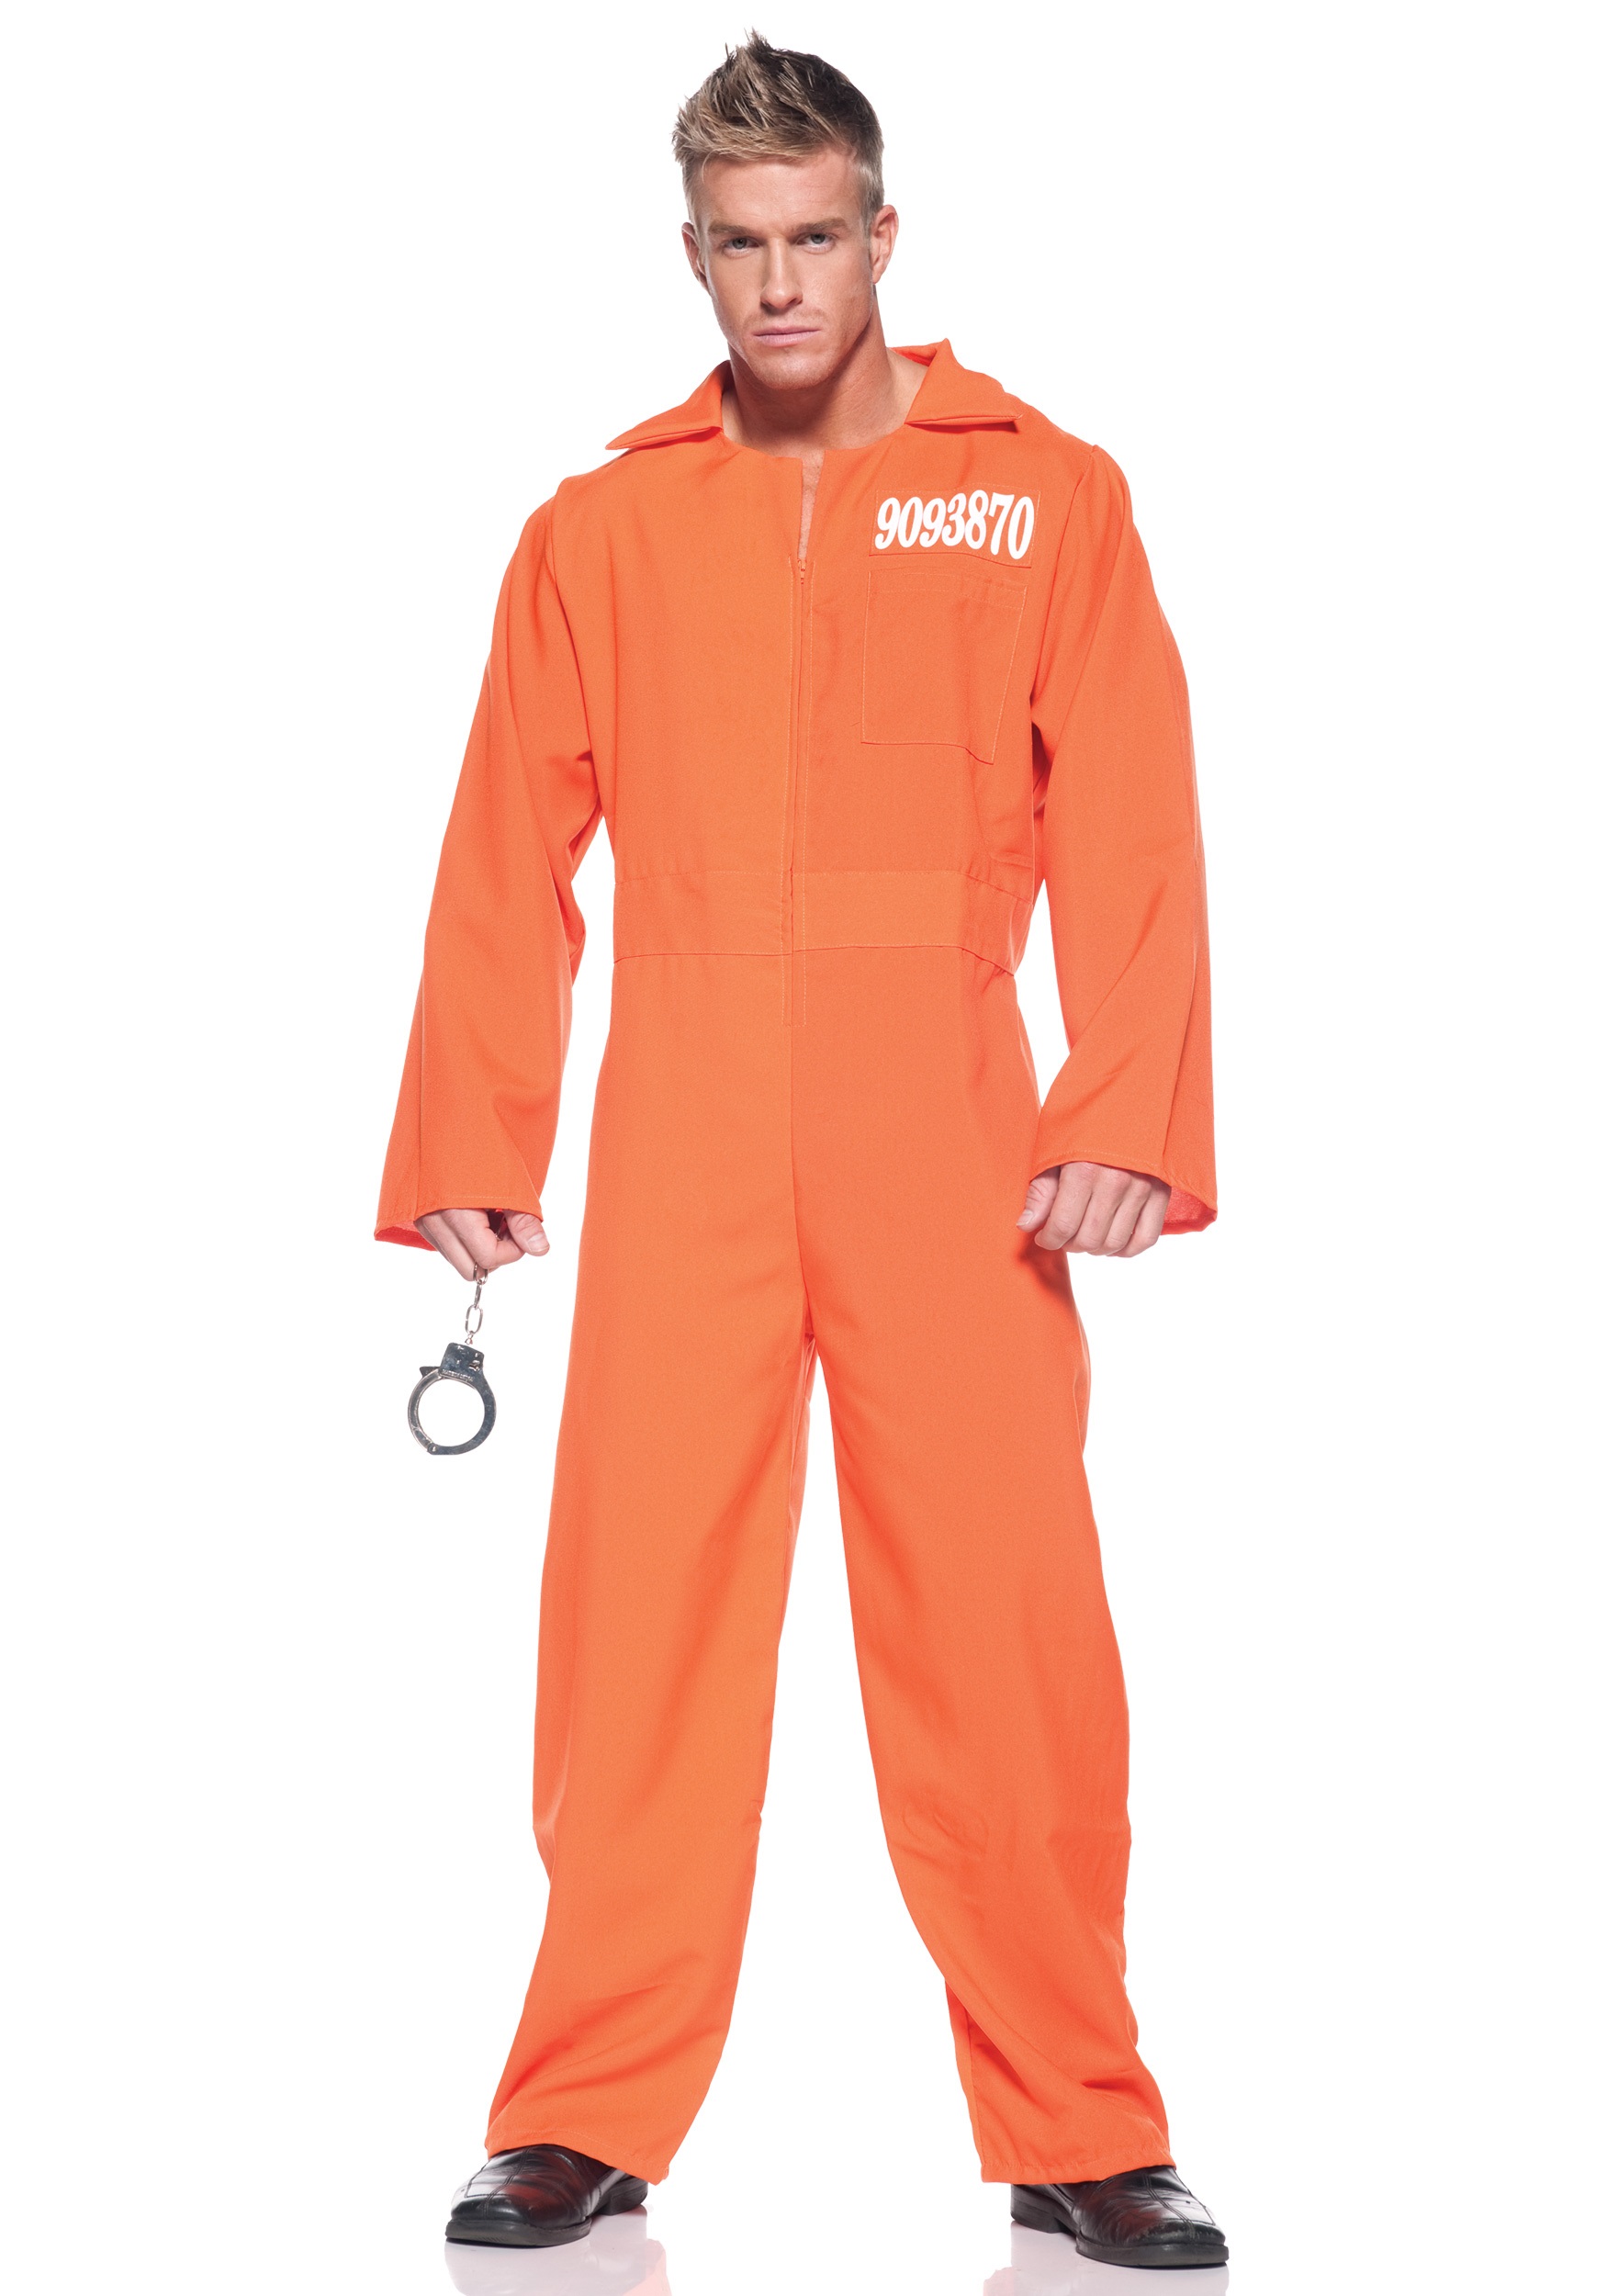 Men's Plus Size Prison Jumpsuit Costume